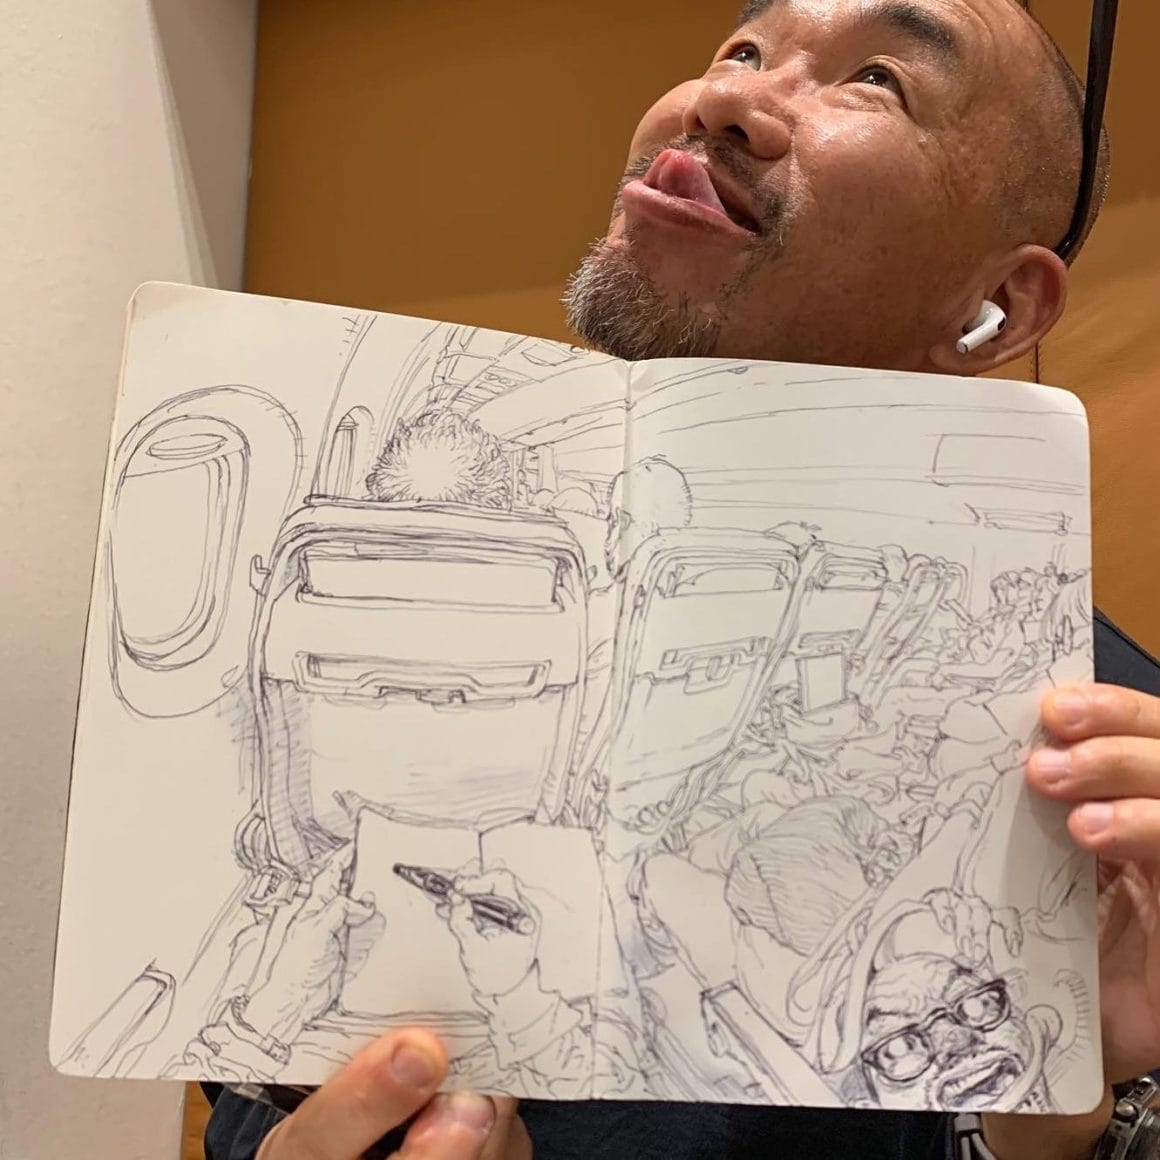 Kim Jung Gi se prend en photo avec son dessin dans les main. Il représente ses mains en train d'elles même dessiner dans l'avion. Nous sommes à la place de ses yeux. Dans le coin de la feuille en baas à droite, il y a une caricature de lui